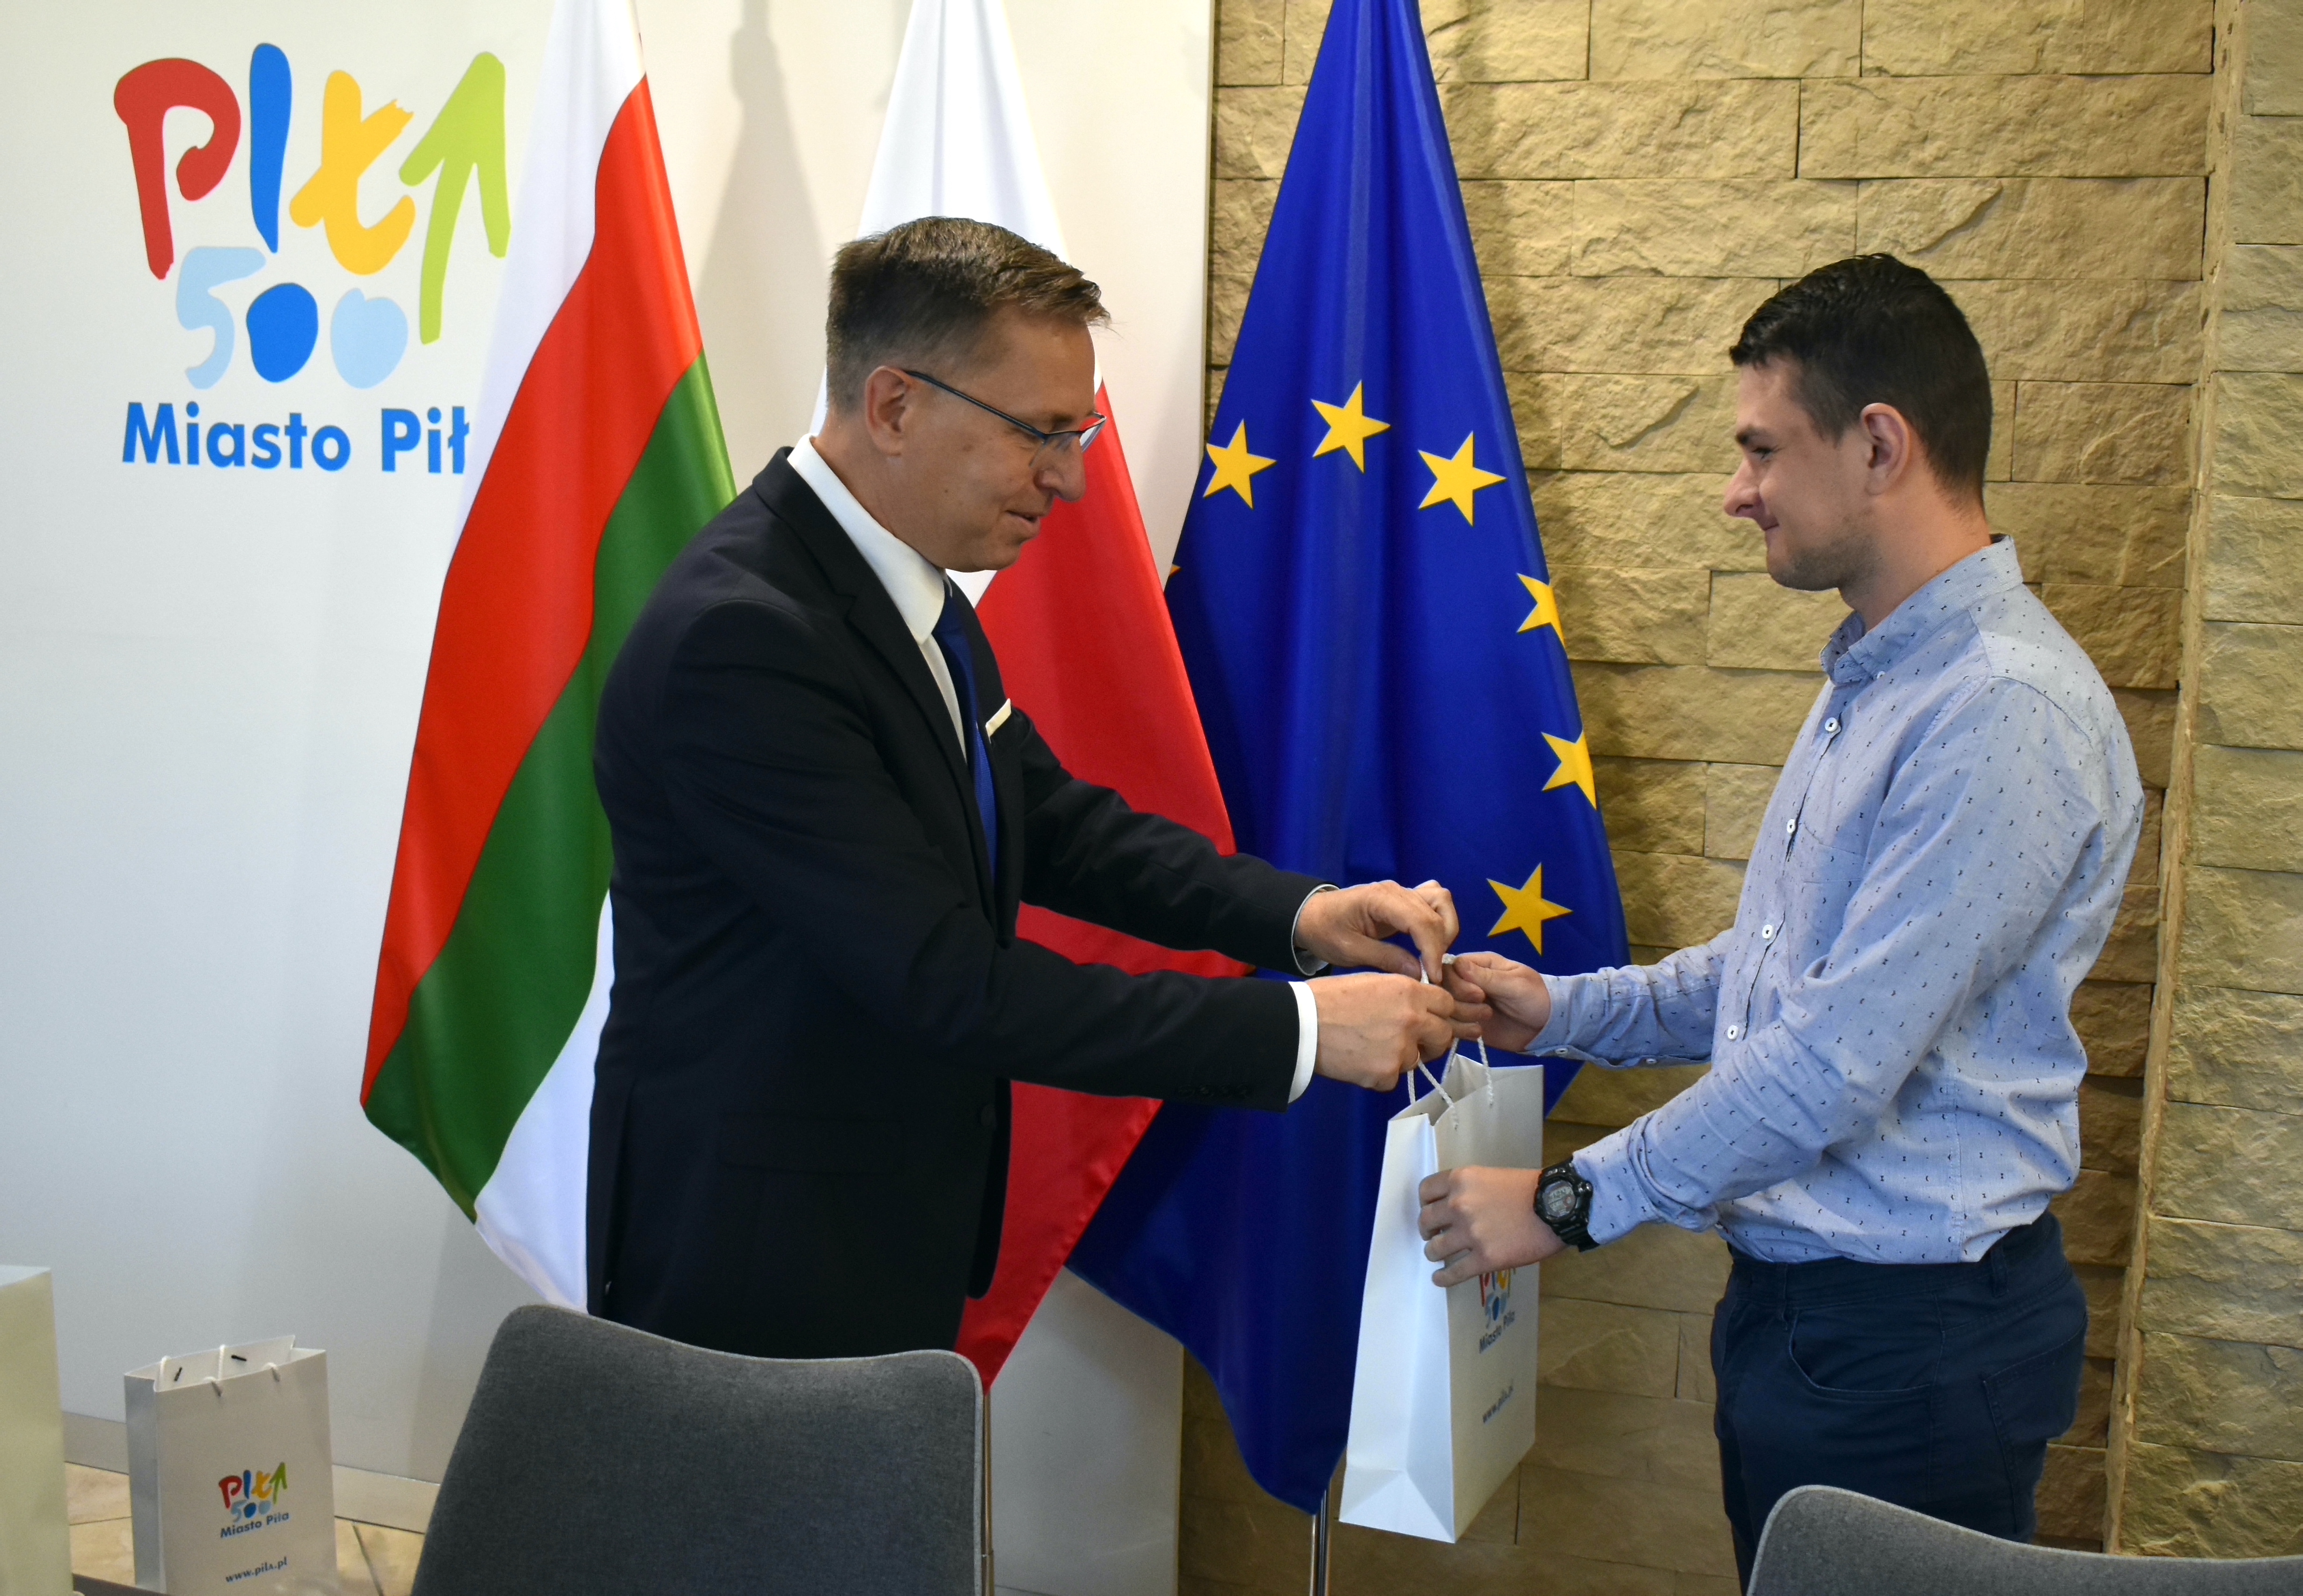 Dwóch mężczyzn - jeden wręcza drugiemu paczkę z upominkiem.  W tle widać logo miasta Piły, stoją flagi miejska, Polska i Unii Europejskiej. 